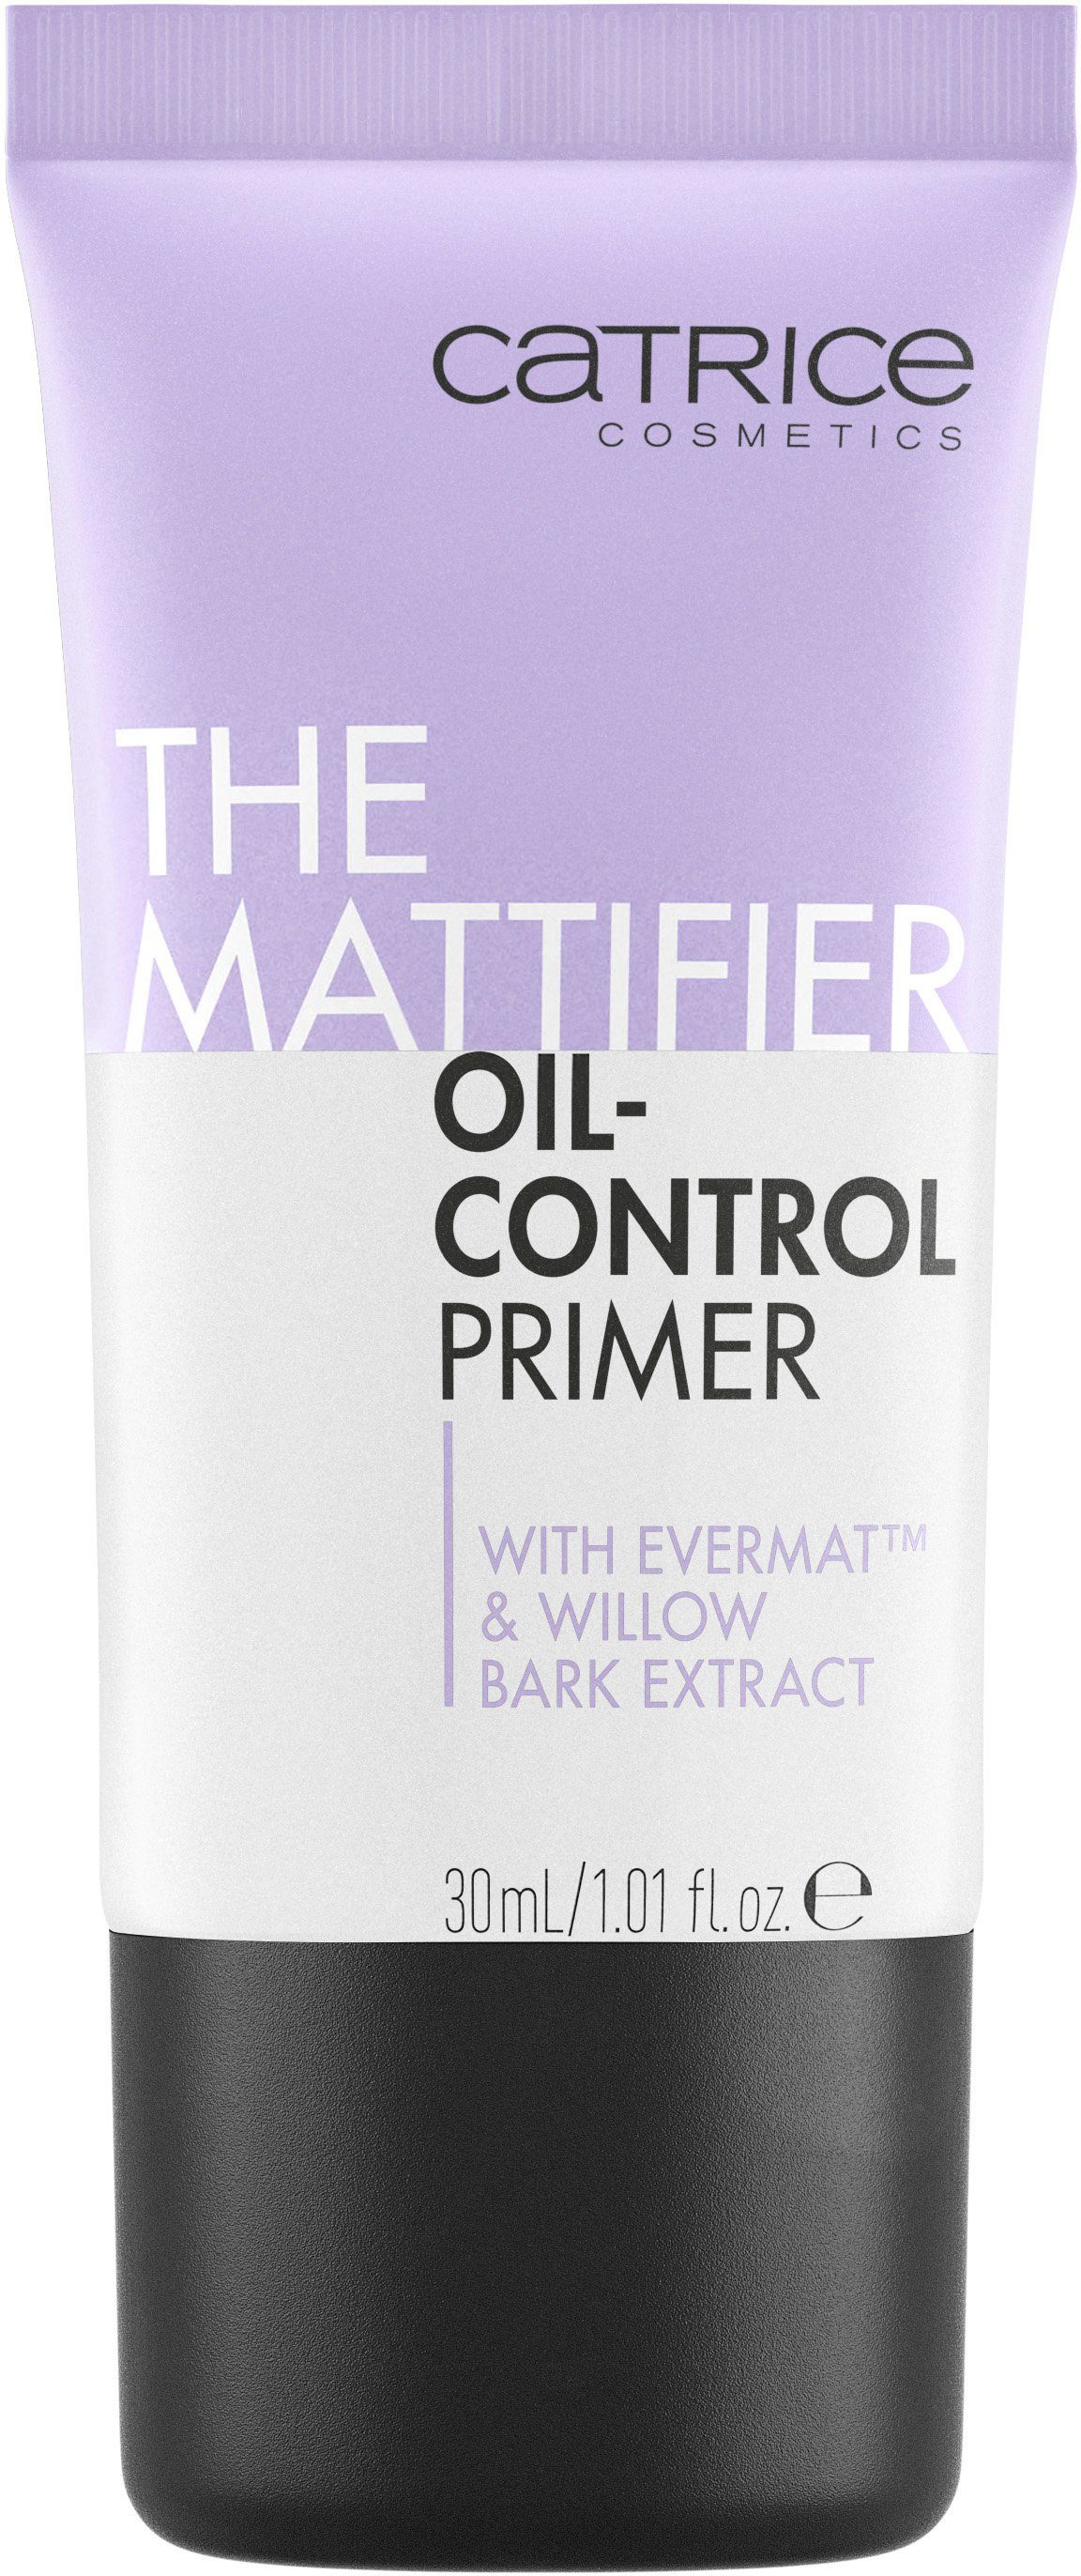 Primer, Mattifier Oil-Control Catrice 3-tlg. Primer The